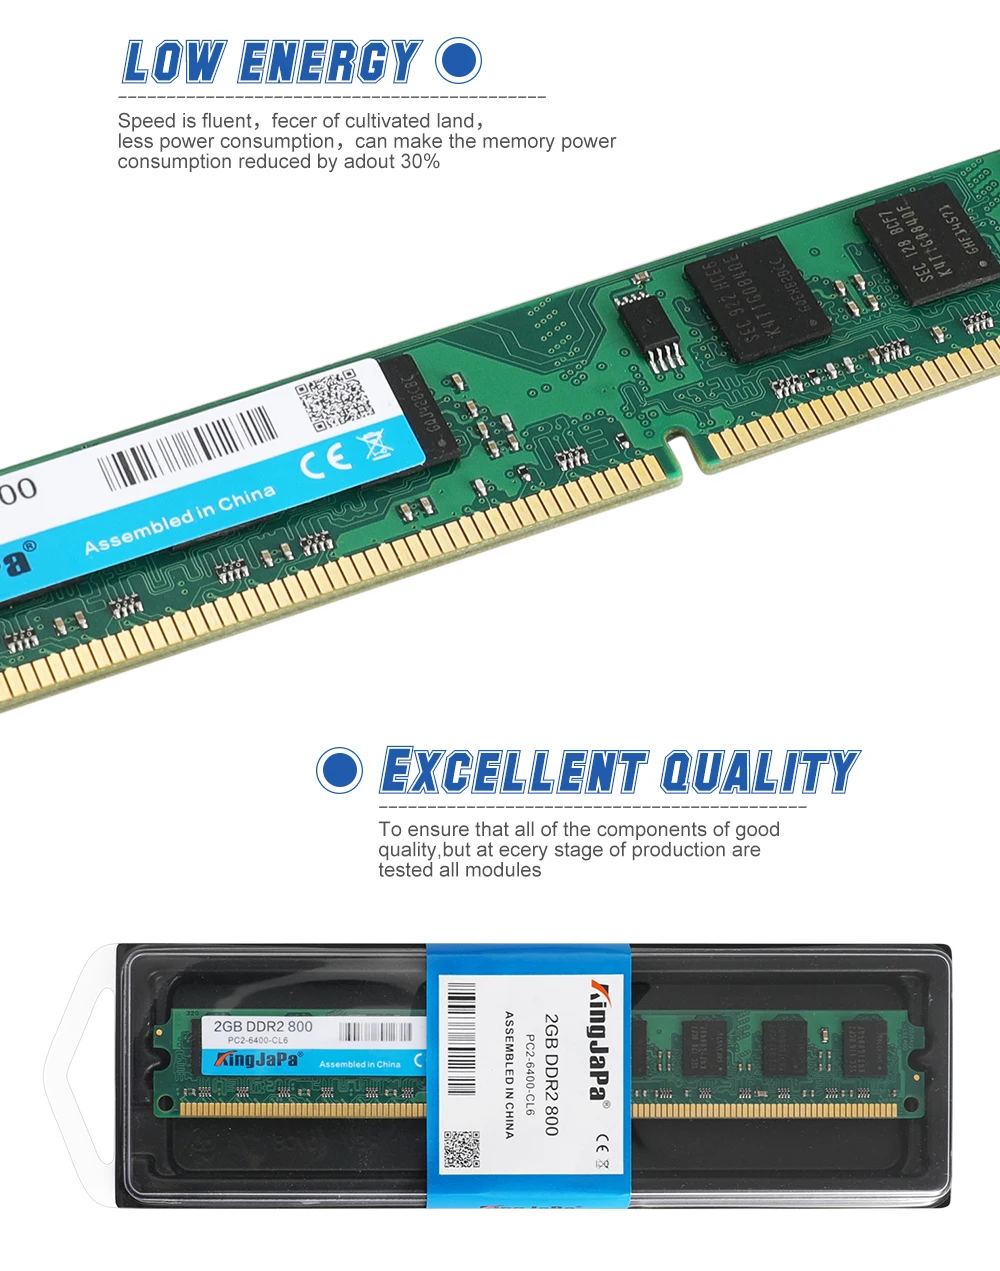 KingJaPa ноутбук с оперативной памятью в DDR1 DDR2 DDR3 1600 МГц 1333 800 400 2 ГБ/4 ГБ/8 ГБ 1 512MB для Тетрадь Sodimm памяти DDR на возраст 1, 2, 3